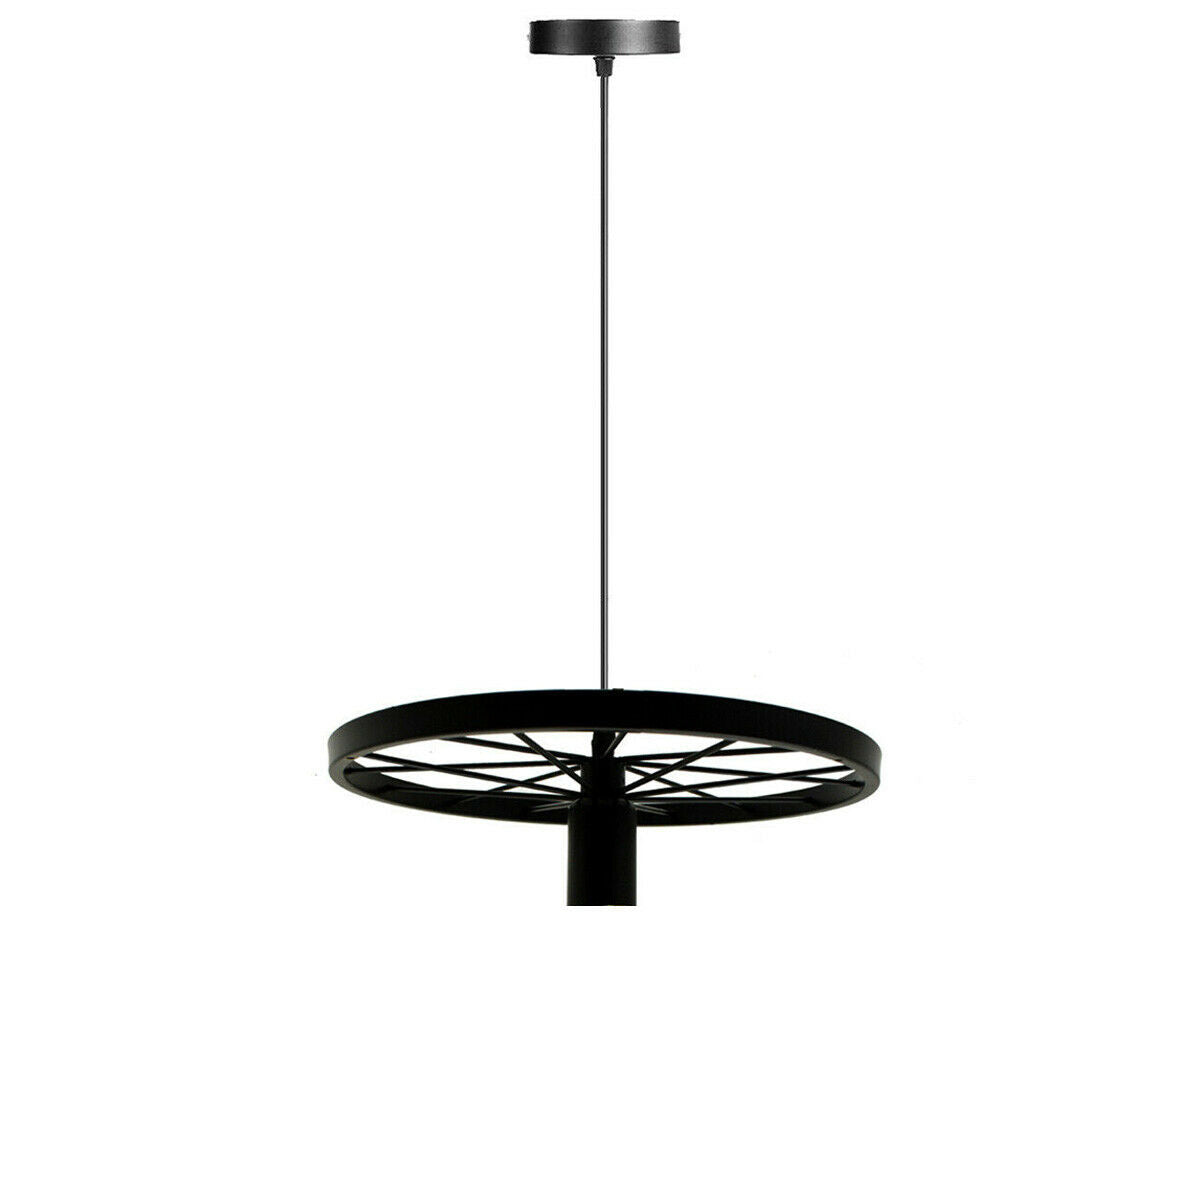 Retro Industrial Ceiling Wheel Pendant Light 